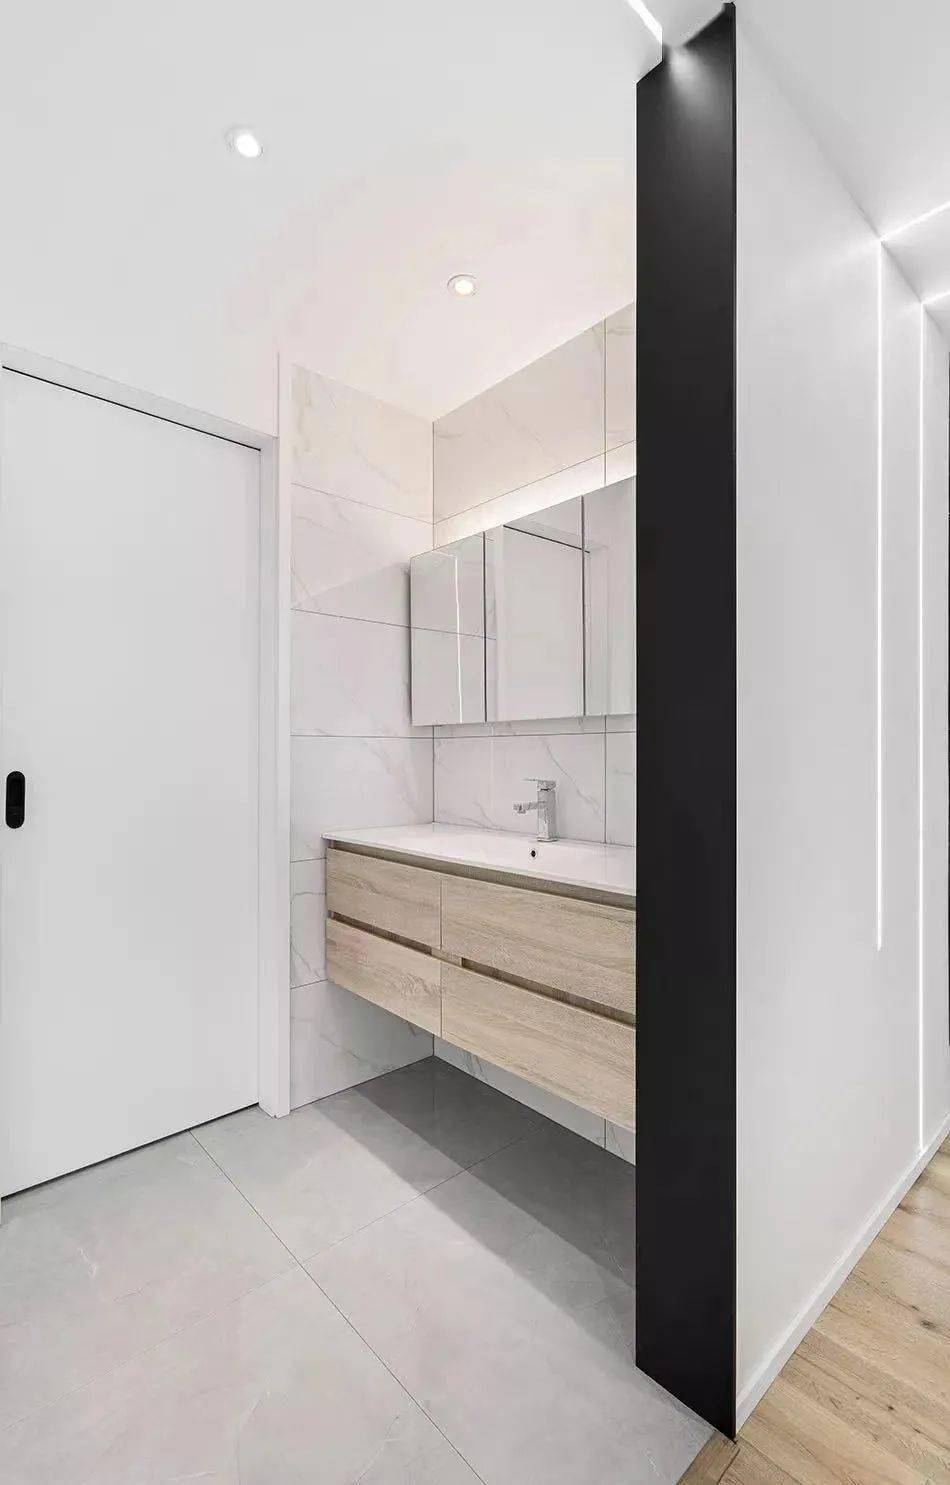 设计师缪茹 可以选一款漂亮的洗手台,背景墙贴上好看的瓷砖,配以推